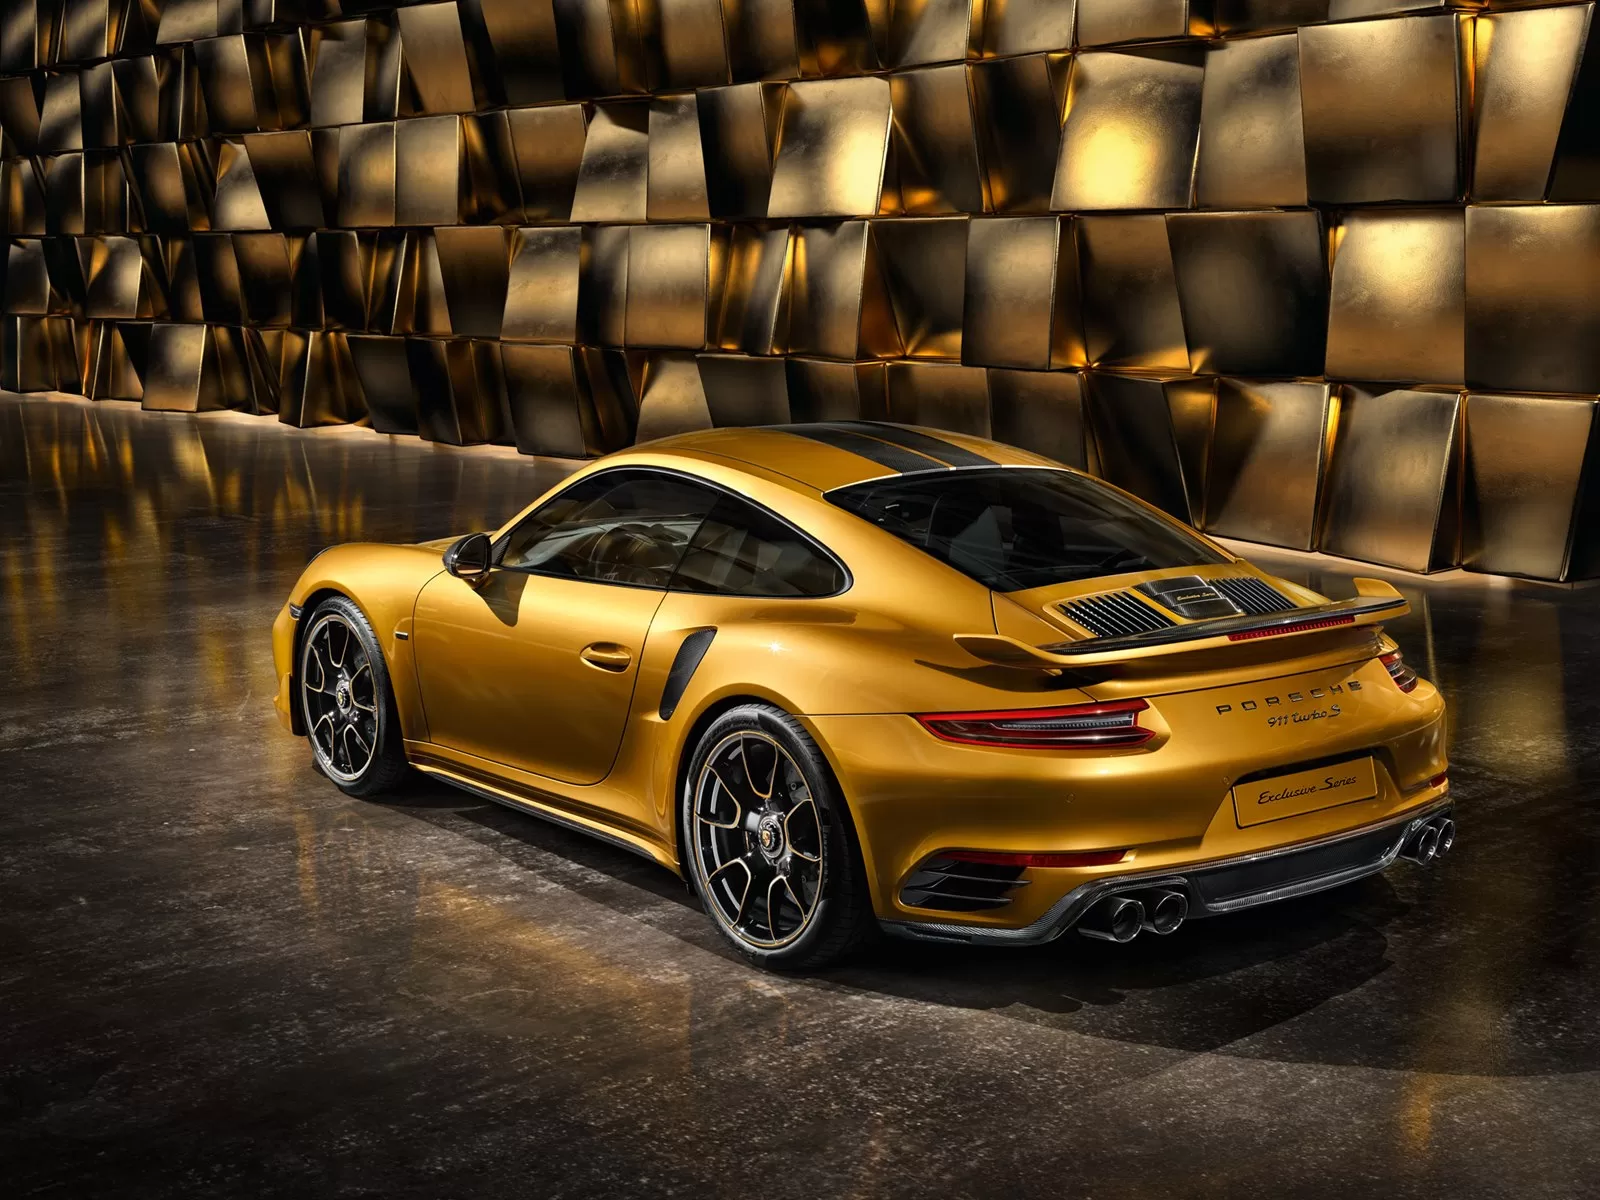 Эксклюзивная серия спортивных автомобилей Porsche с ограниченным выпуском 500 экземпляров